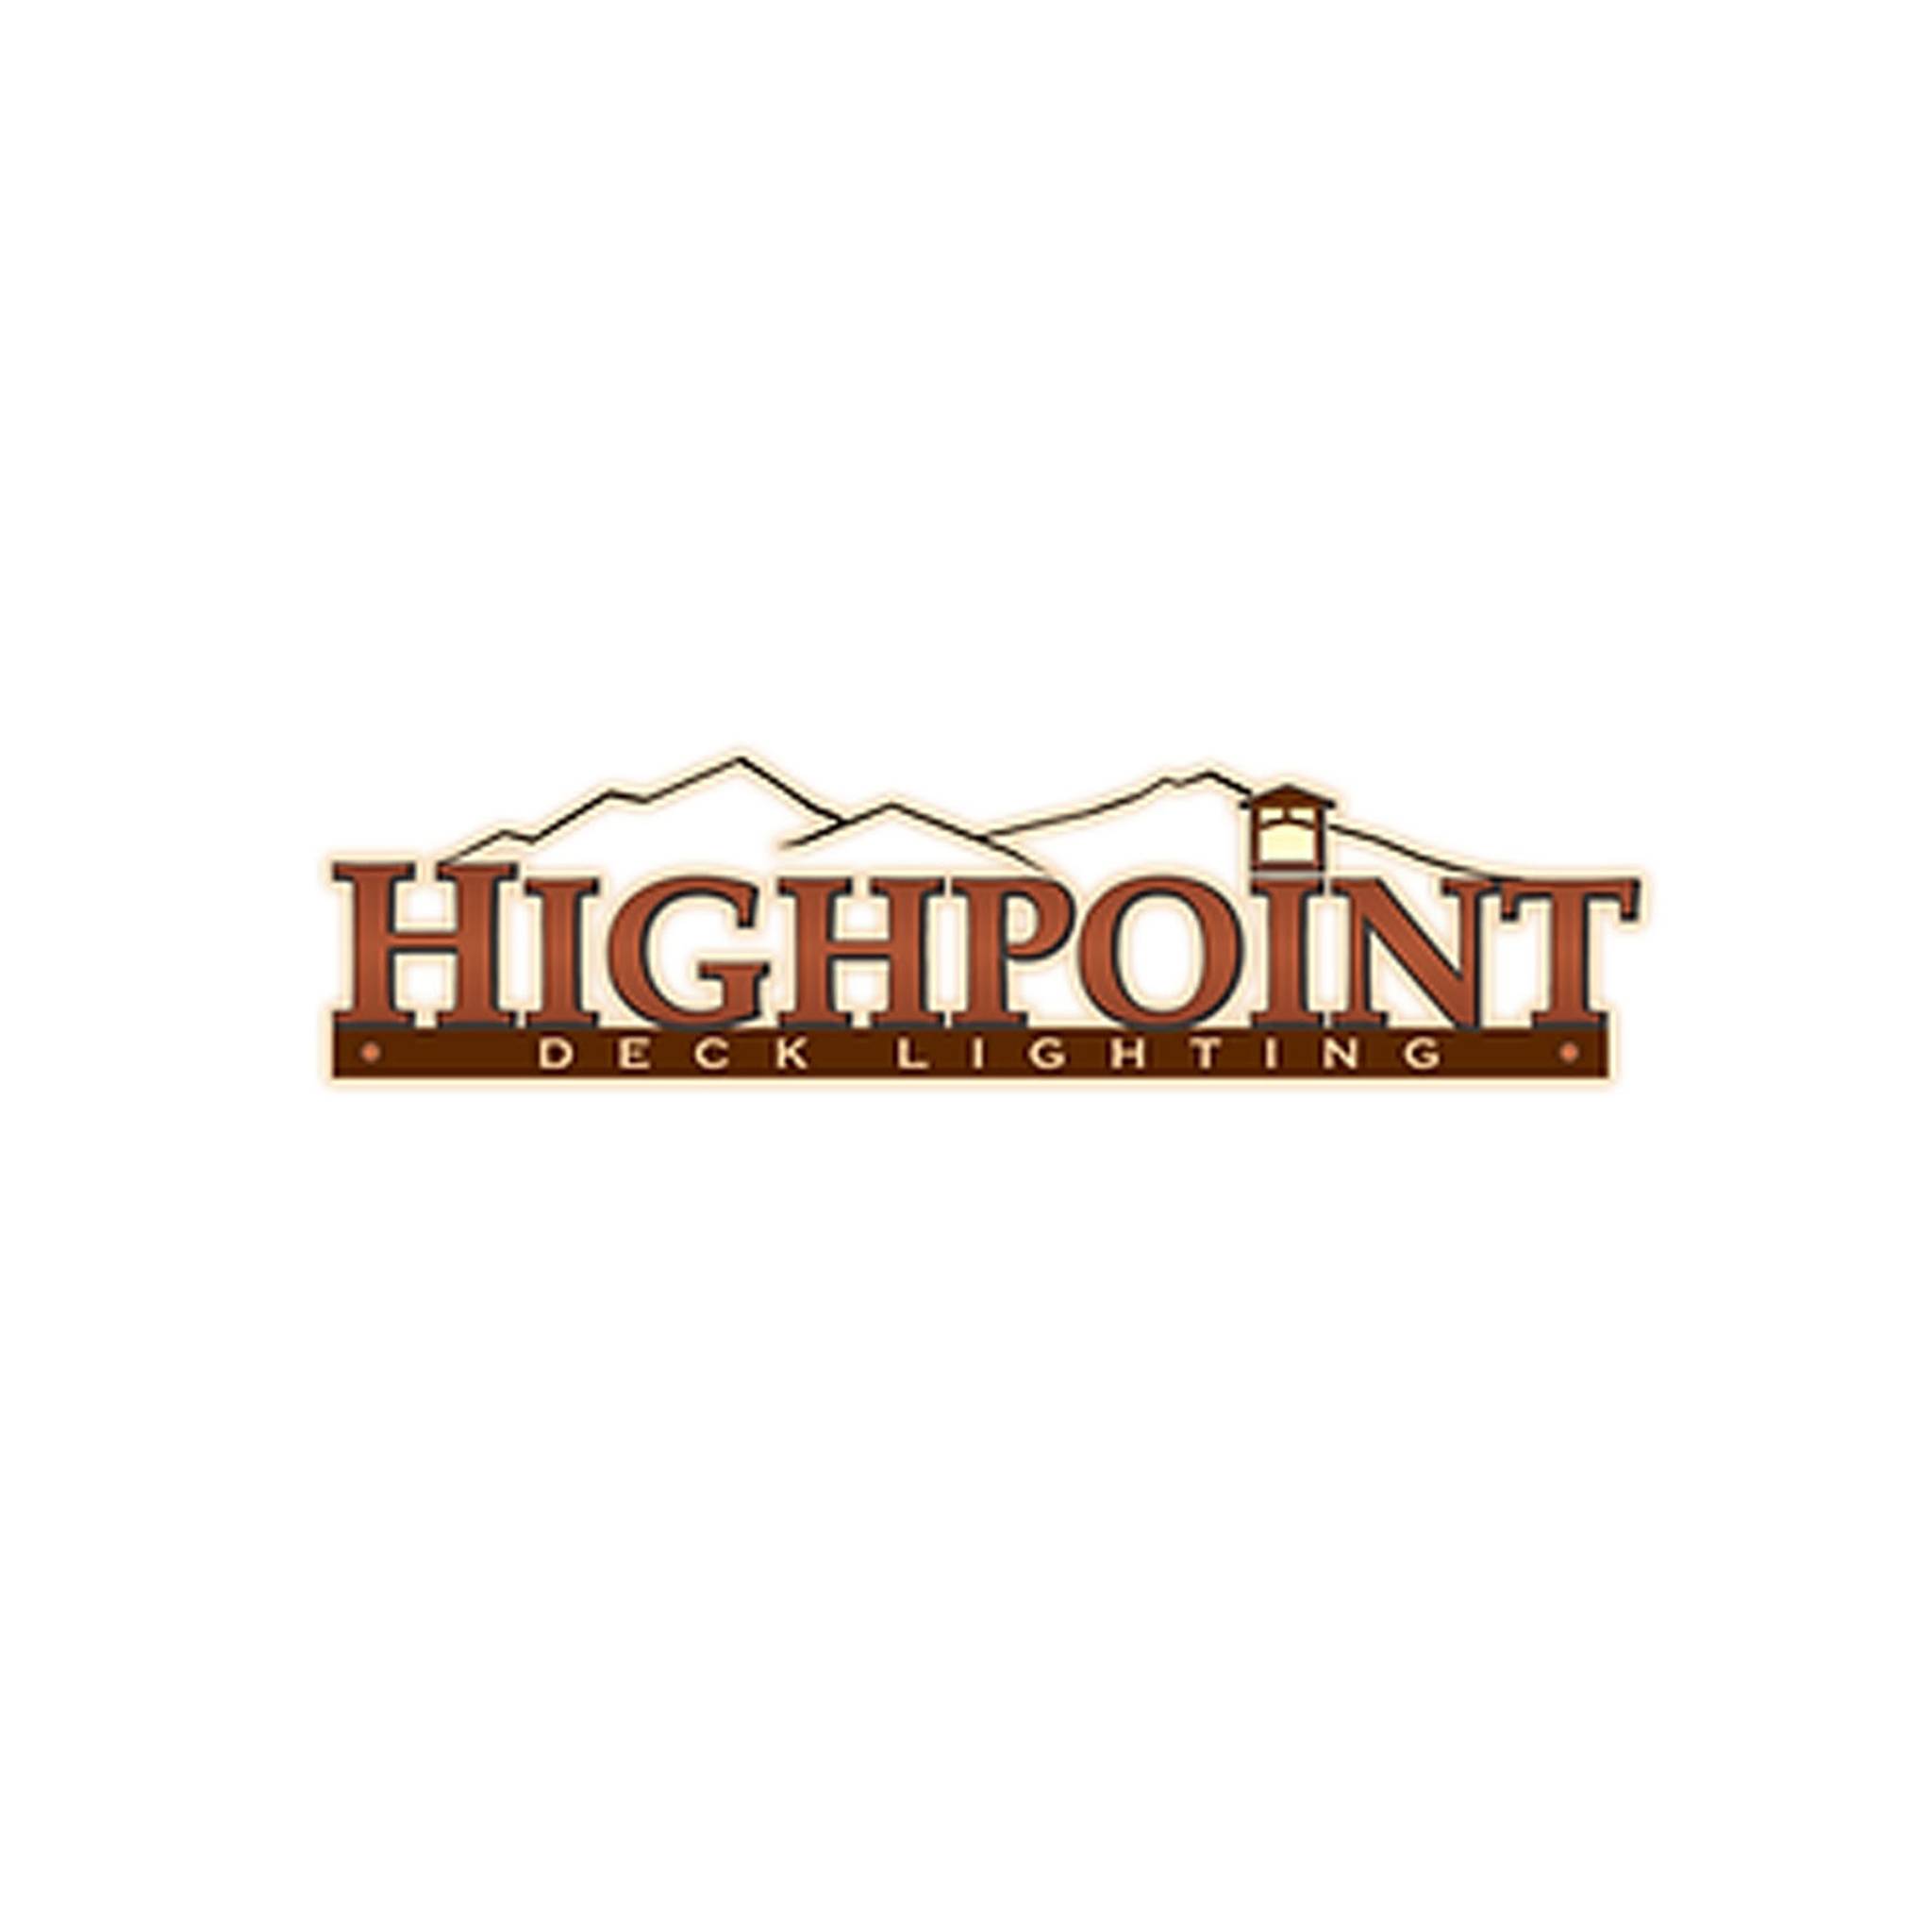 HighPoint logo